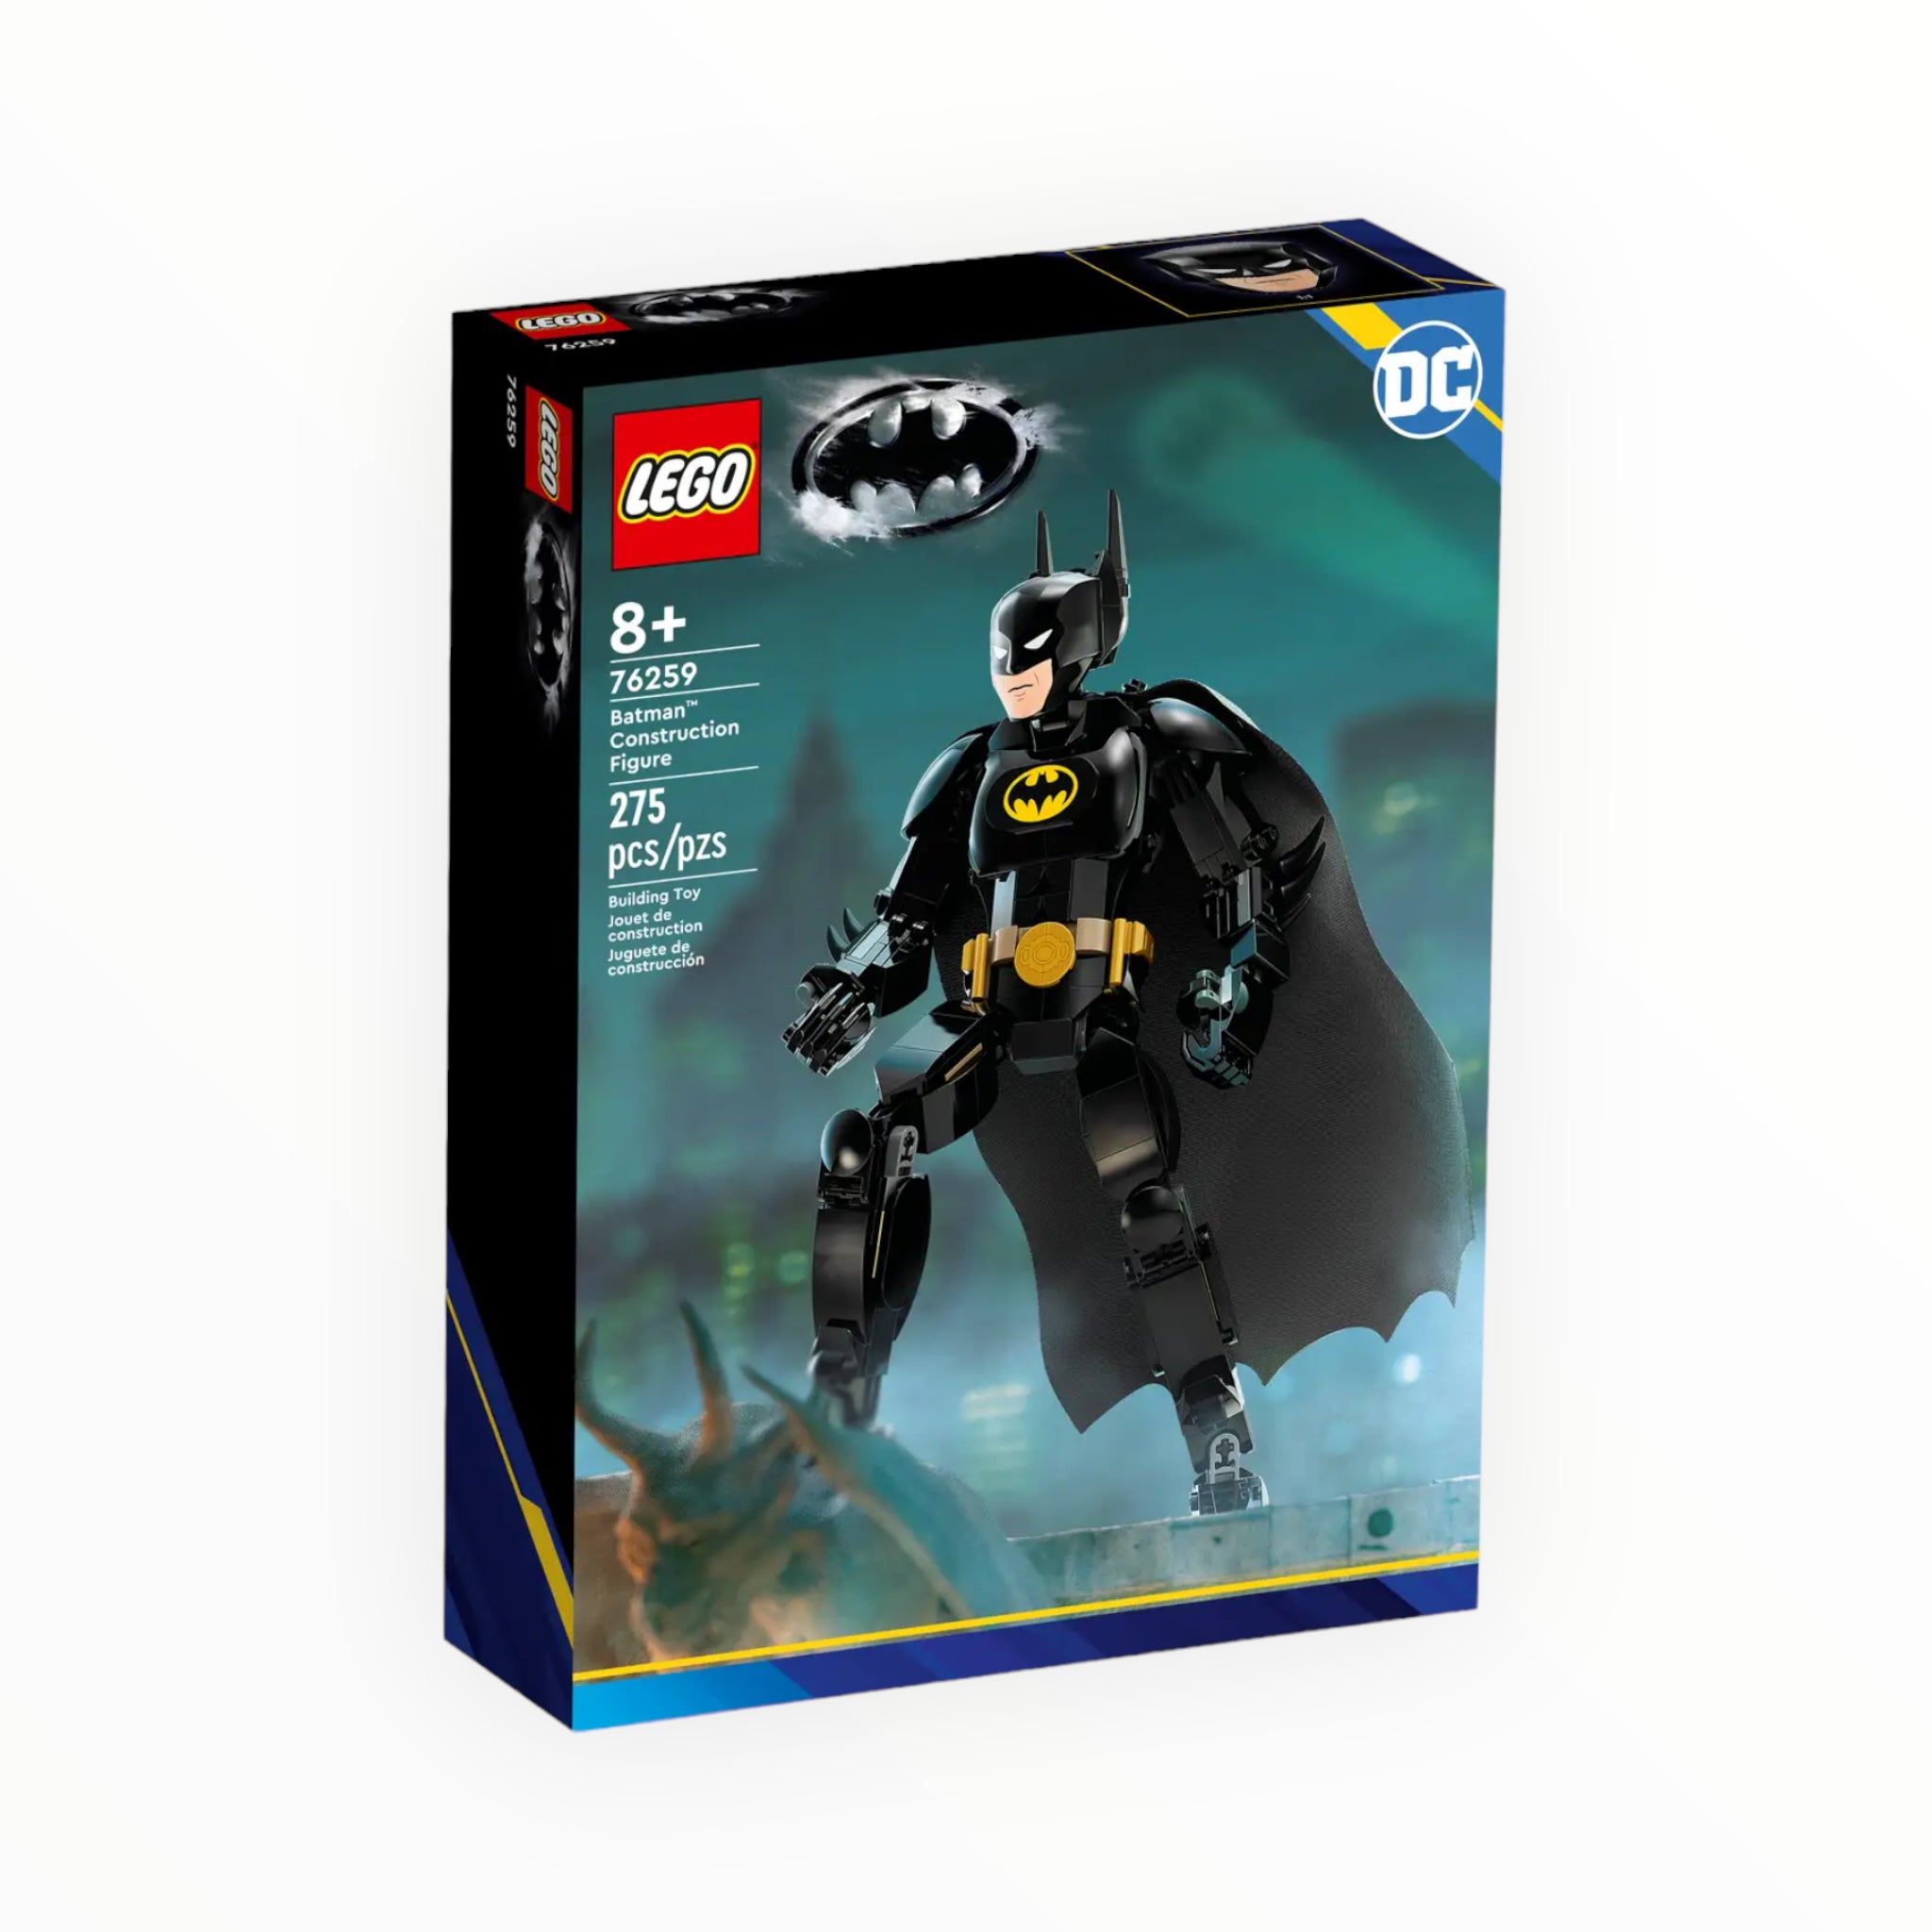 76259 DC Batman Construction Figure